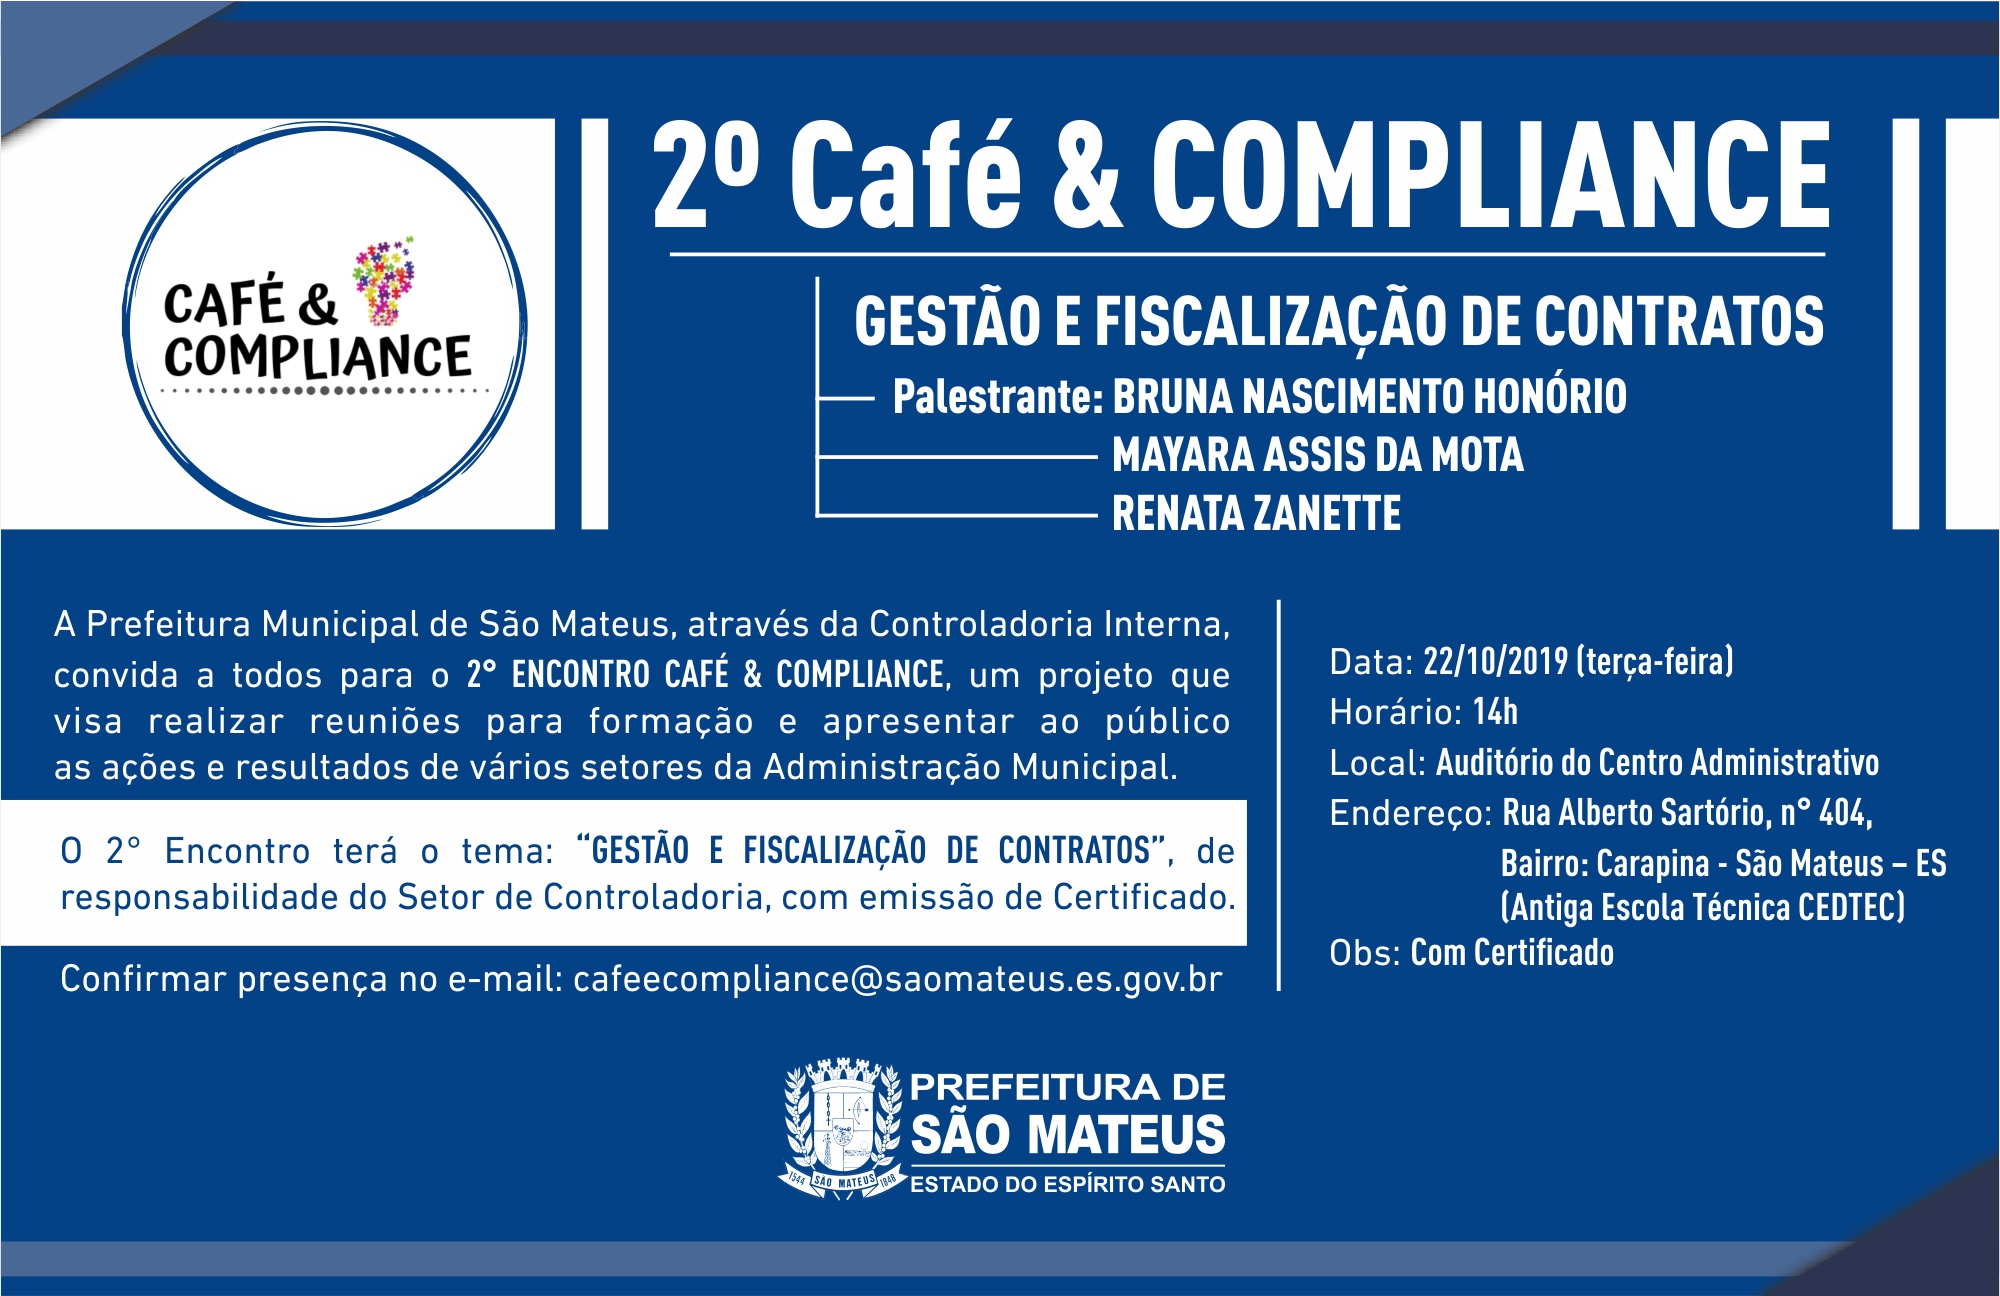 2º Café & COMPLIANCE - GESTÃO E FISCALIZAÇÃO DE CONTRATOS